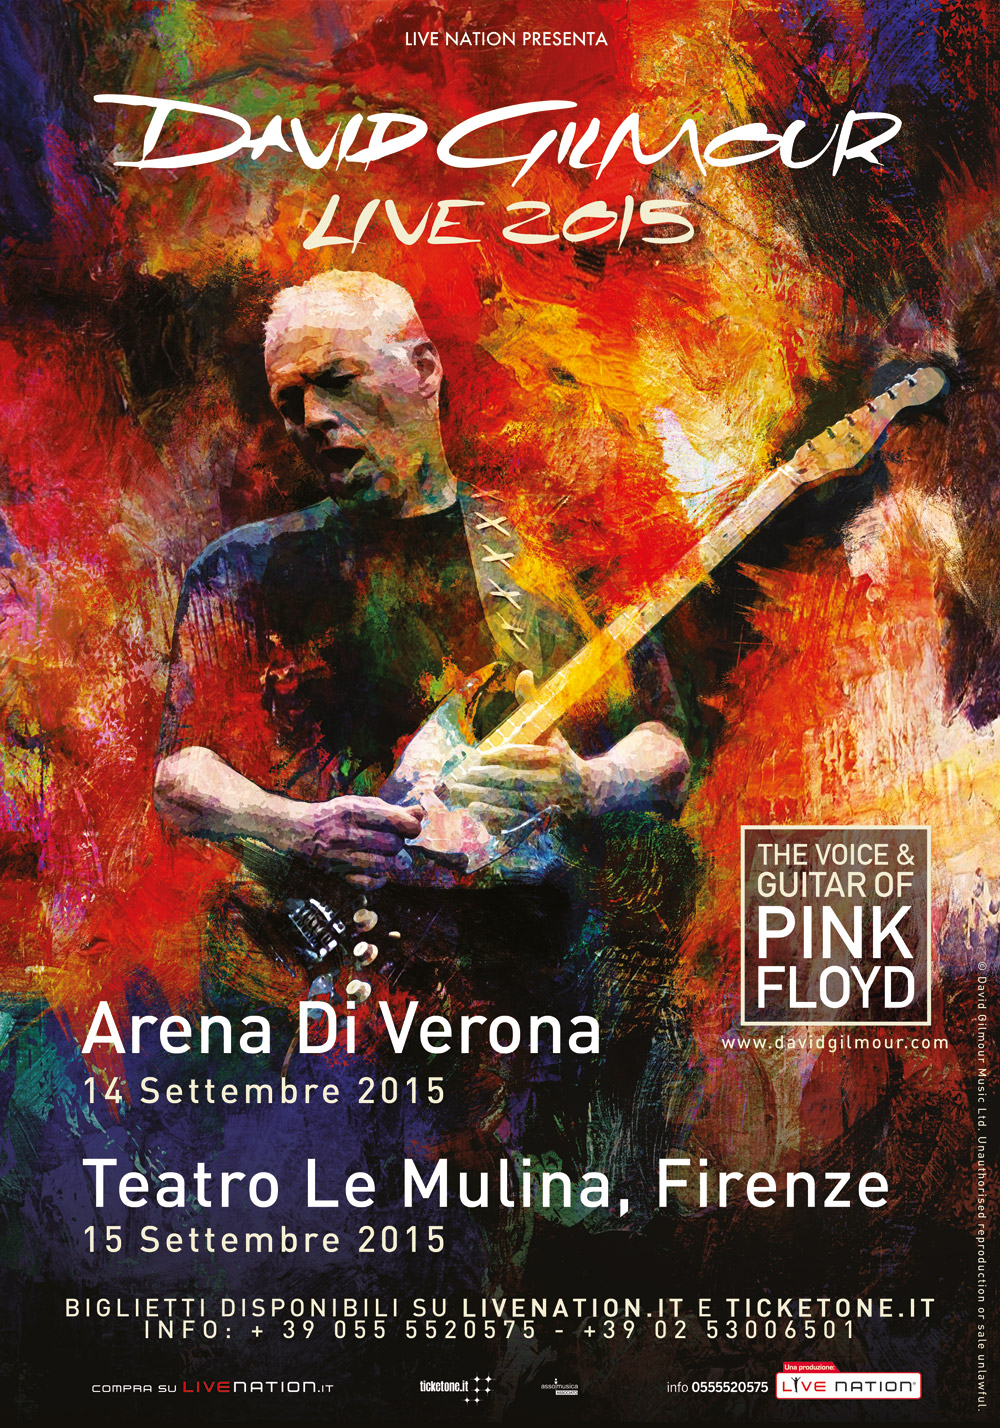  Il tour di David Gilmour dei Pink Floyd in UK ed Europa a Settembre 2015